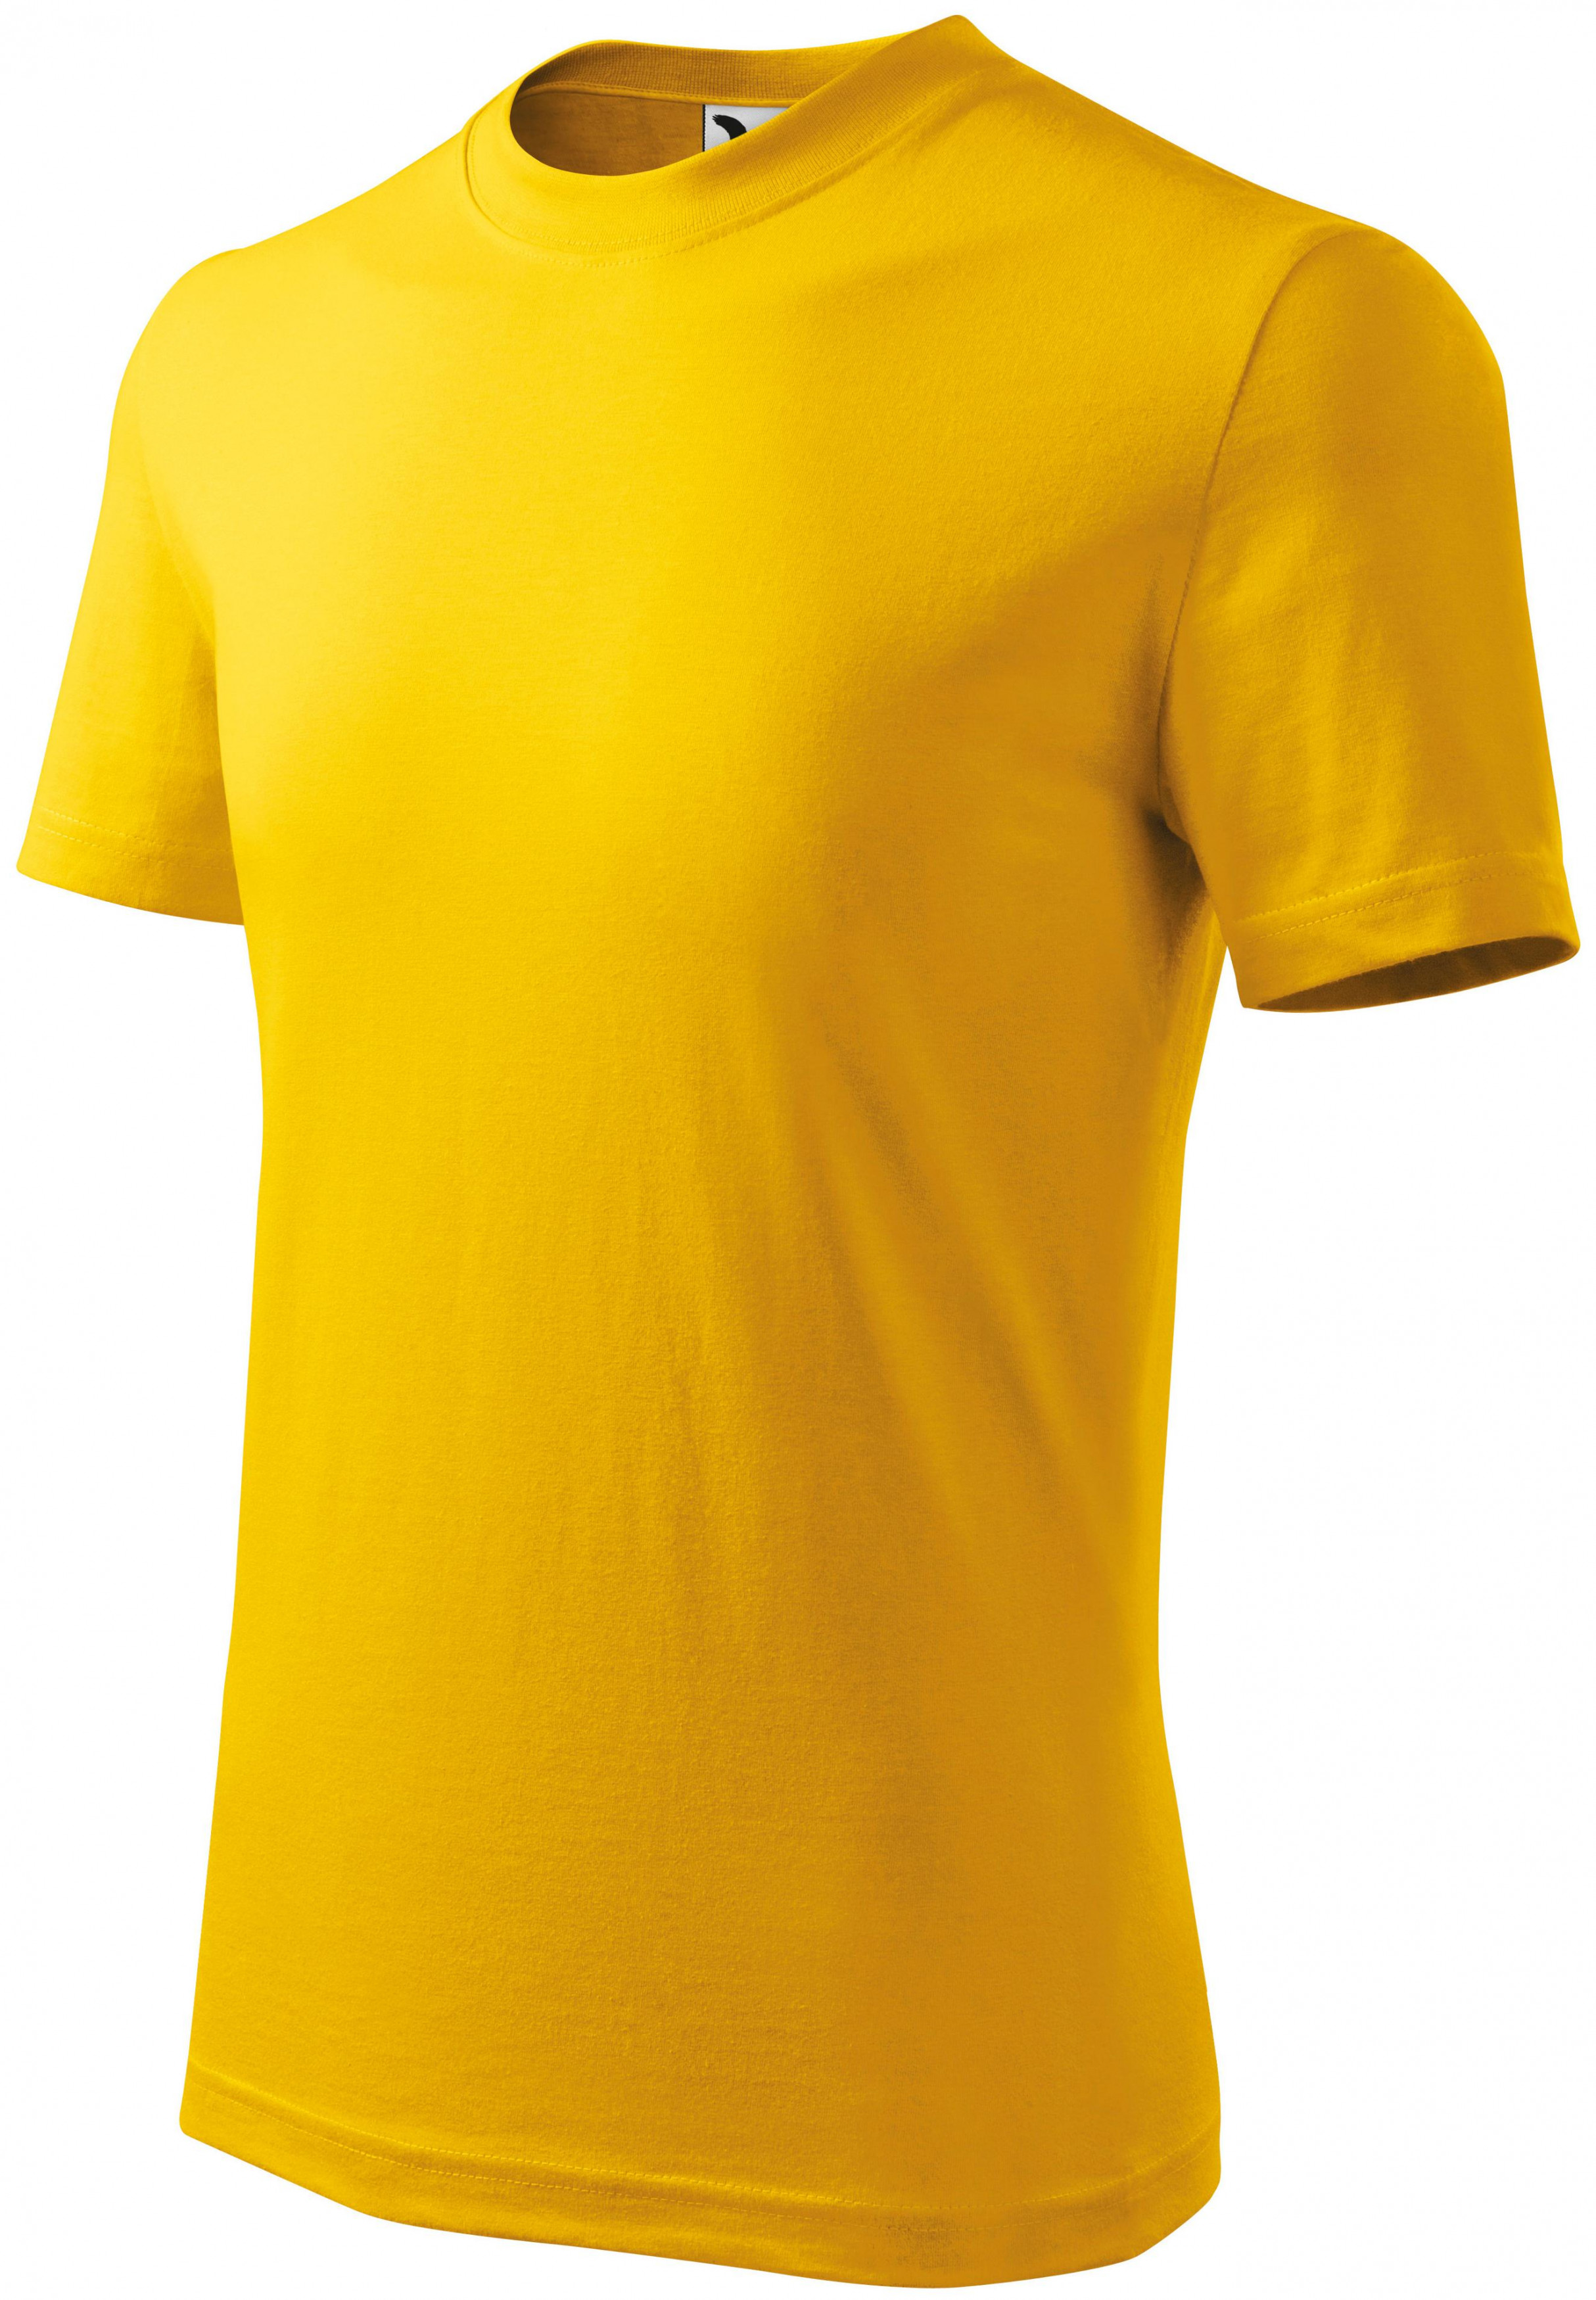 Detské tričko jednoduché, žltá, 146cm / 10rokov